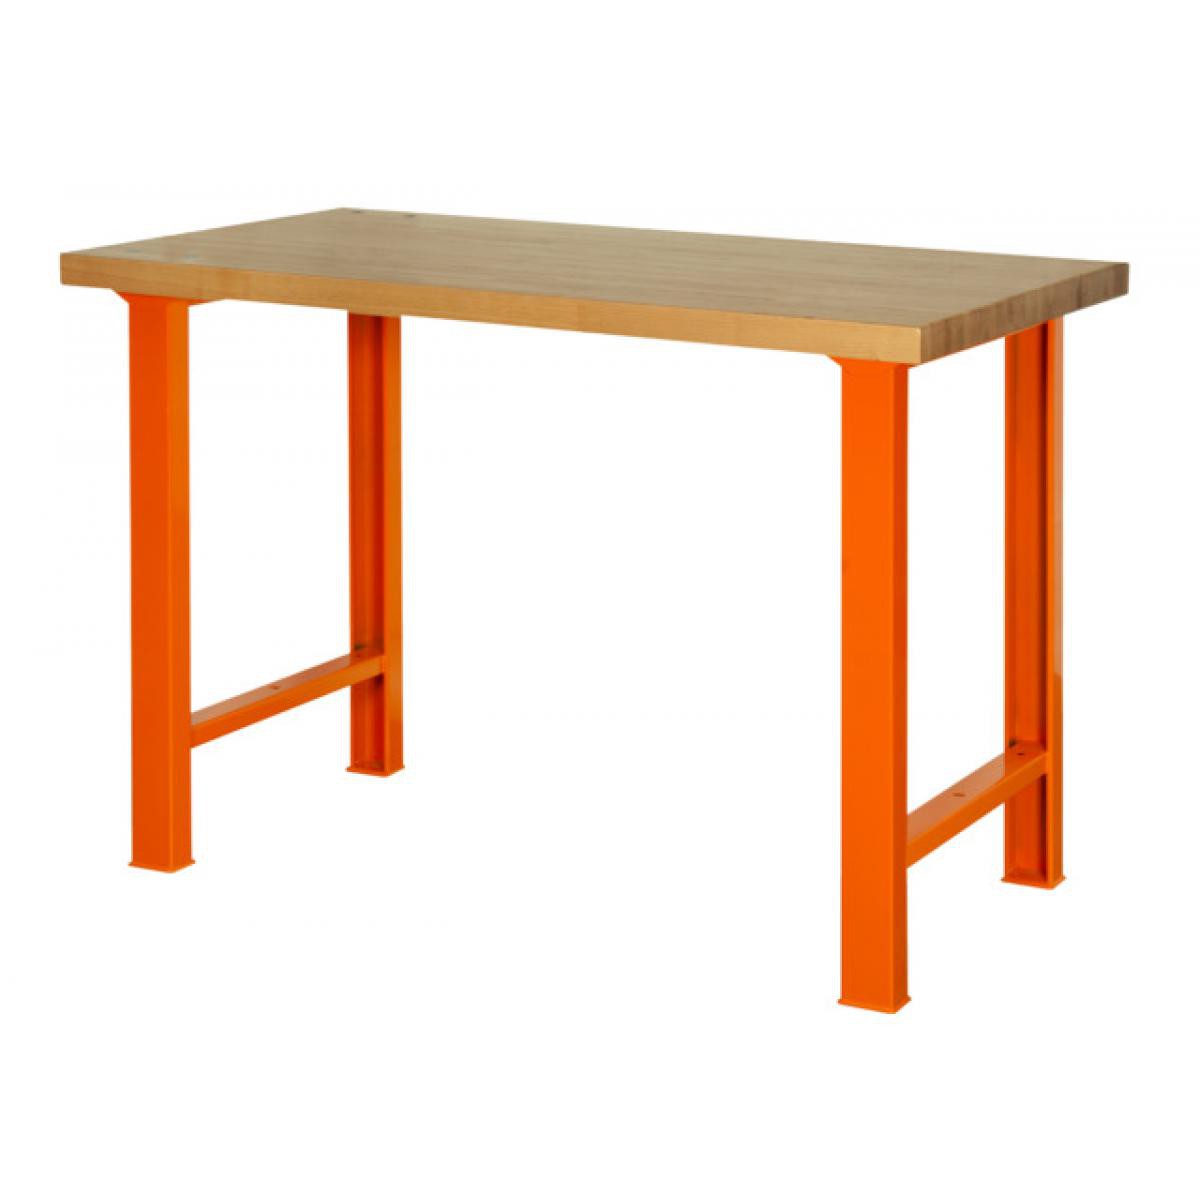 Bahco - Bahco - Etabli d'atelier avec plateau en marronnier 180 cm orange - 1495WB18TW - Etablis